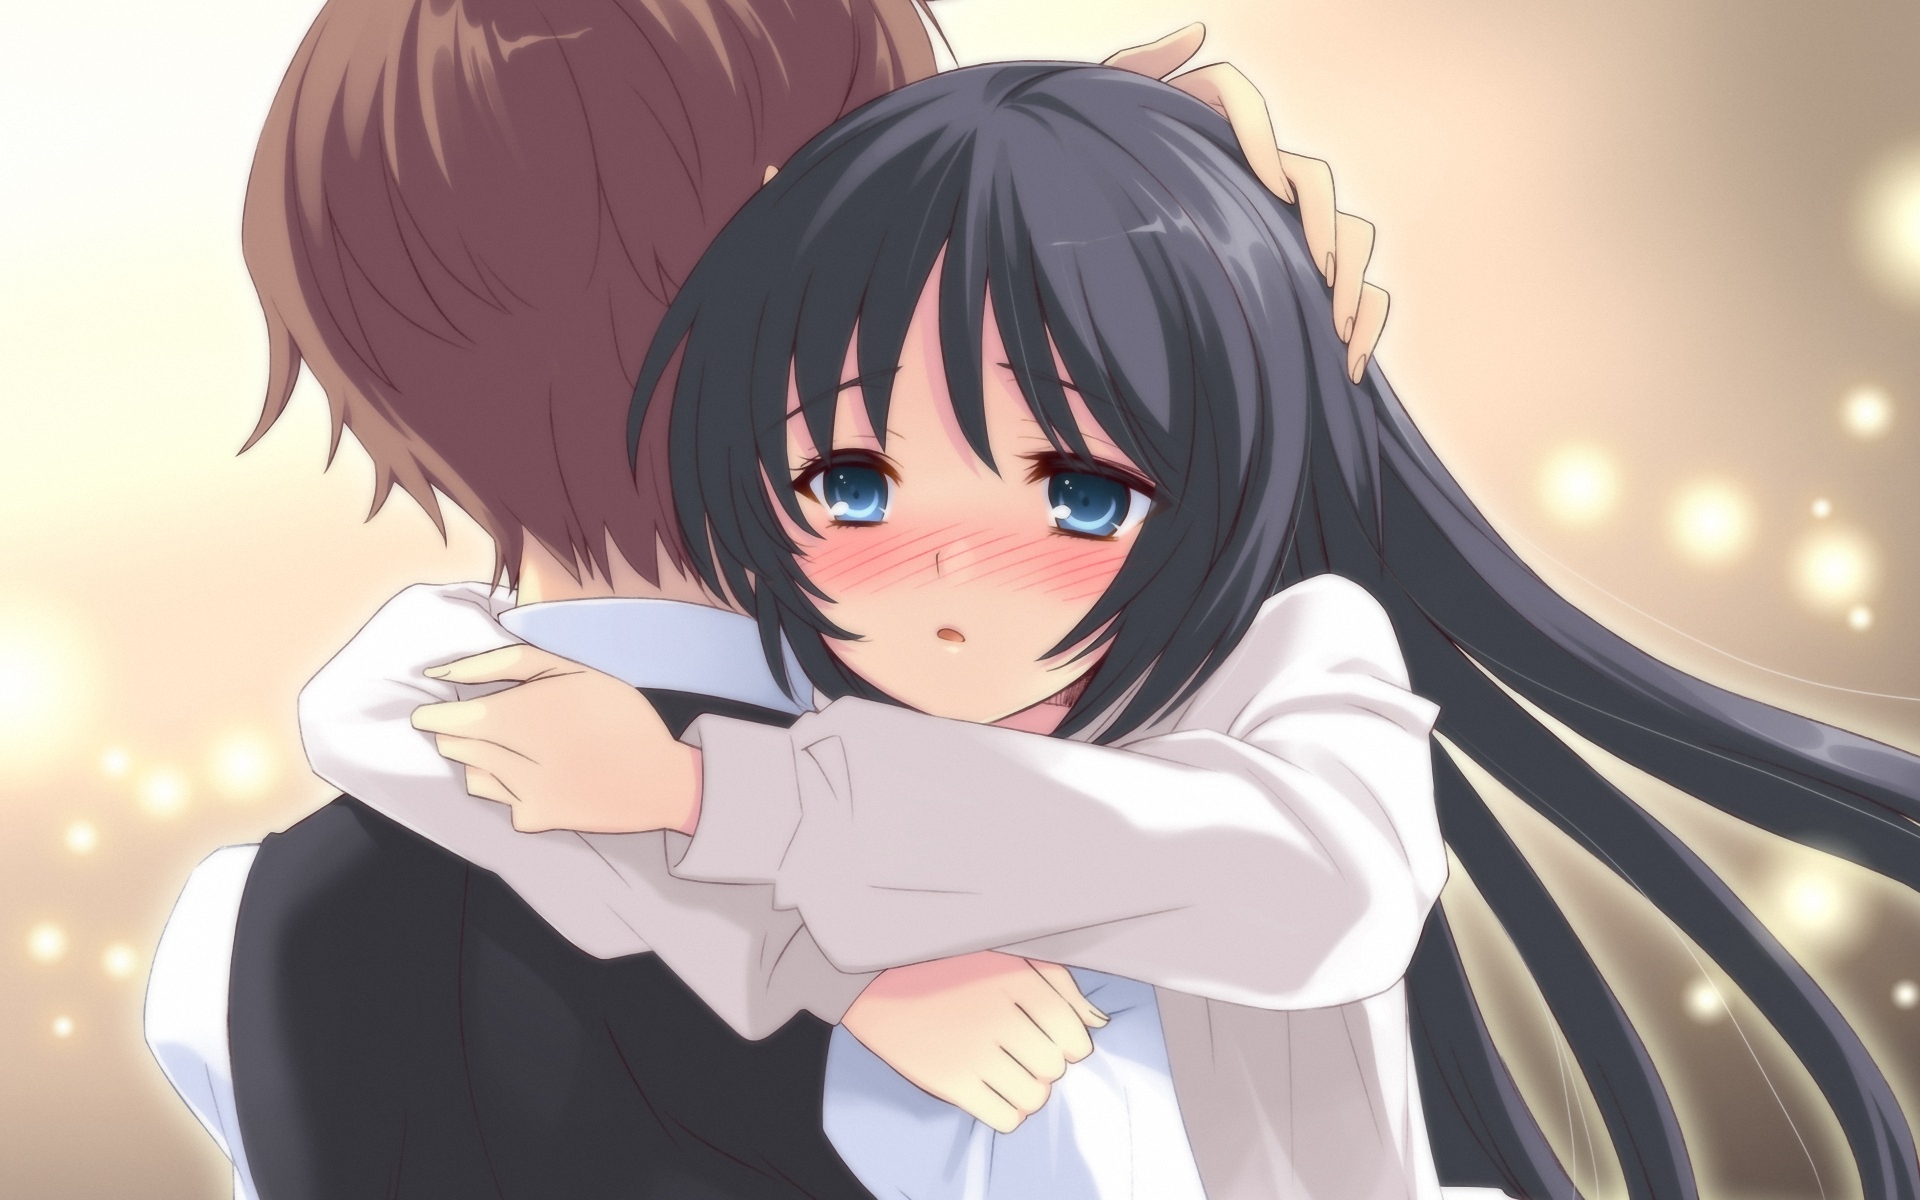 Anime Girl And Boy Hug HD Wallpapers - Wallpaper Cave